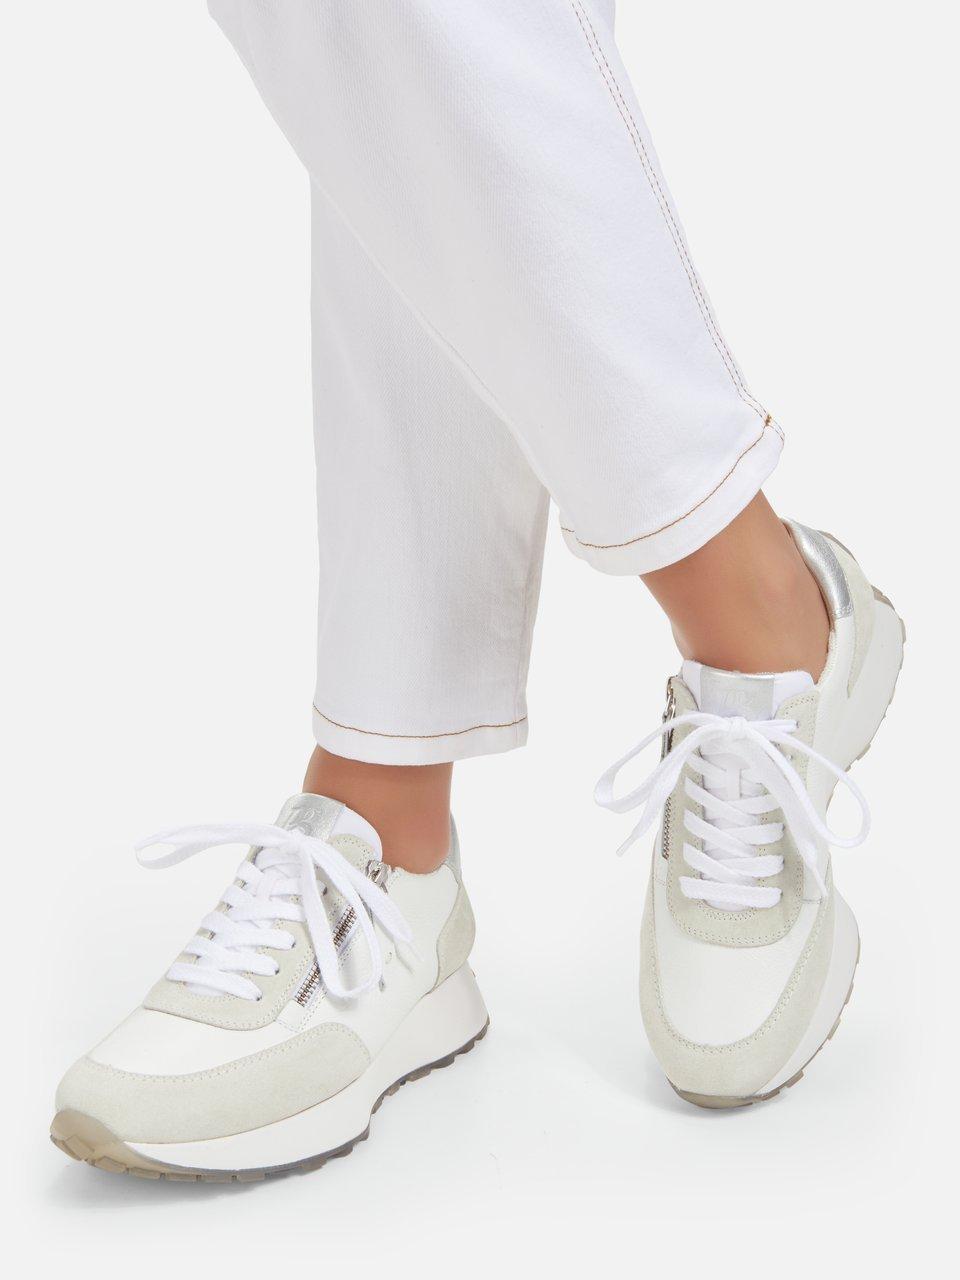 Veeg op tijd defect Paul Green - Sneakers van kalfsnappa- en suèdeleer - wit/zilverkleur